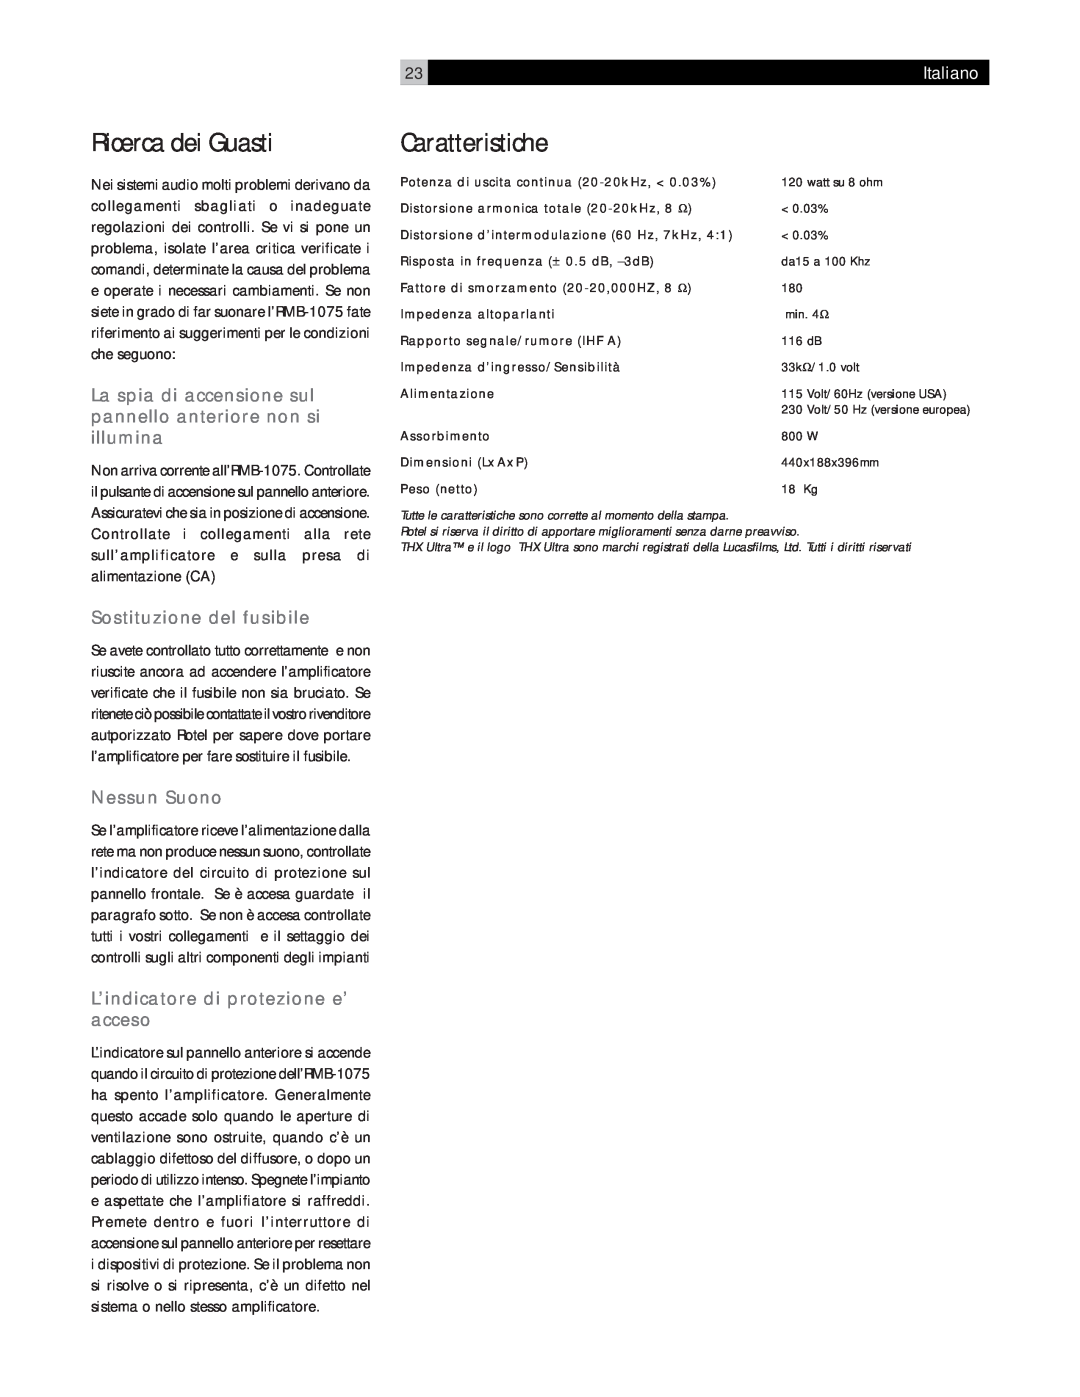 Rotel RMB-1075 owner manual Ricerca dei Guasti, Caratteristiche, Sostituzione del fusibile, Nessun Suono, 23Italiano 